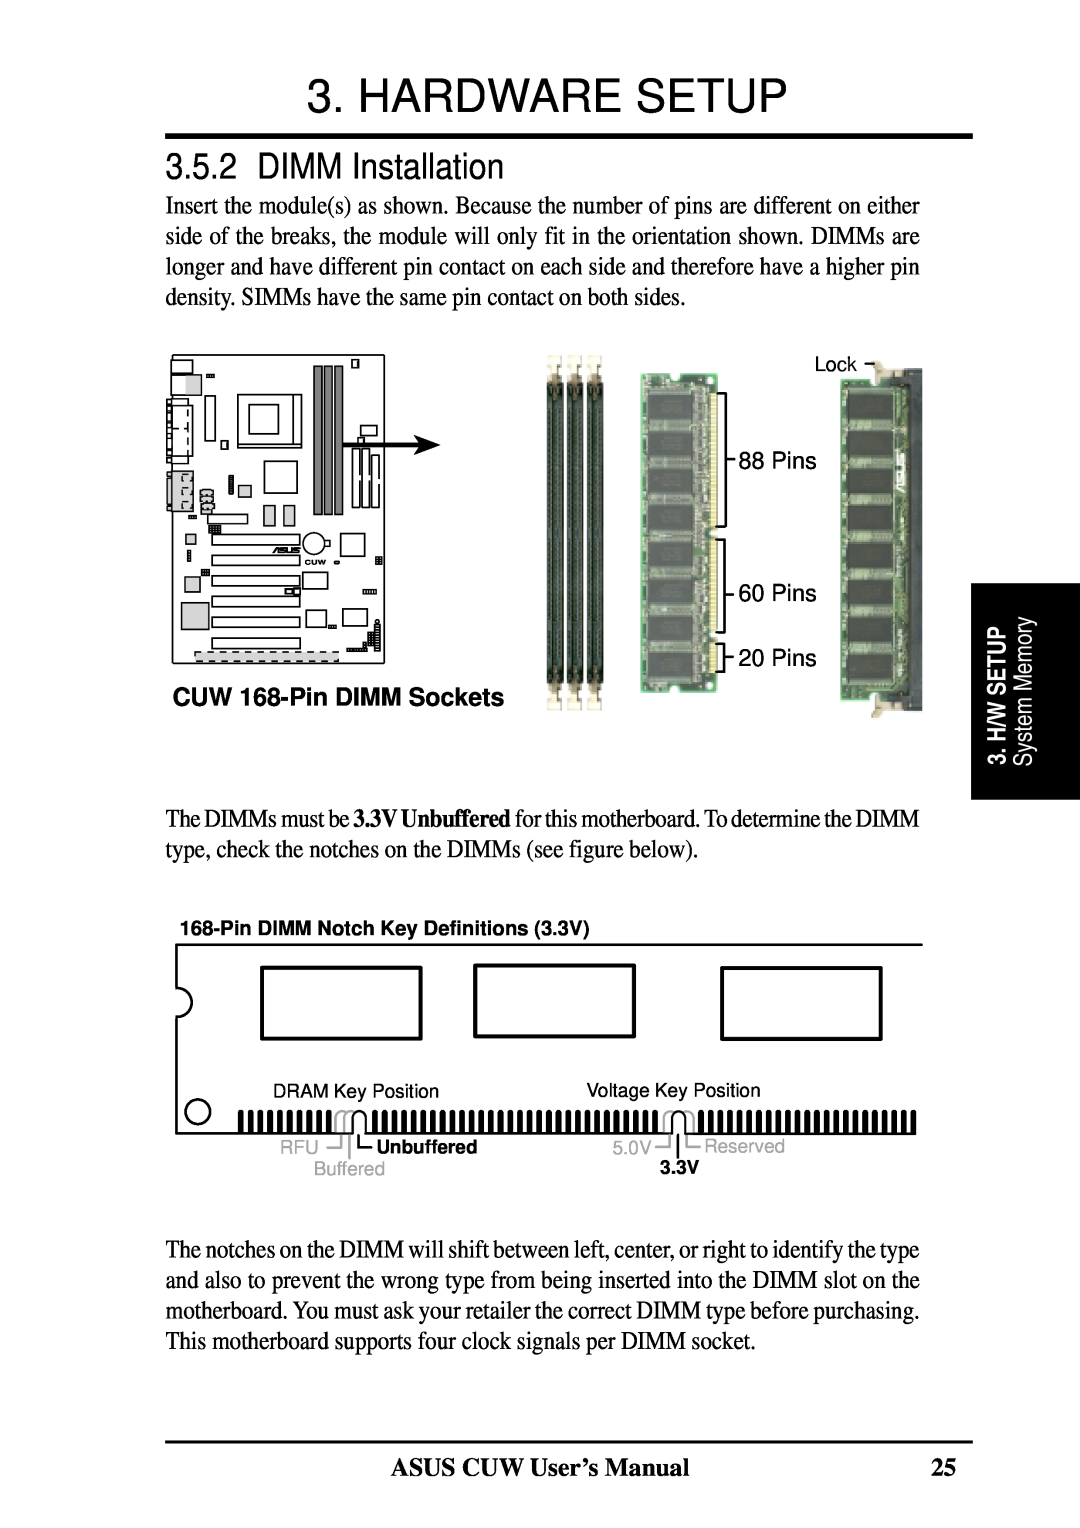 Asus 810 user manual DIMM Installation, Hardware Setup, System Memory, ASUS CUW User’s Manual, CUW 168-Pin DIMM Sockets 